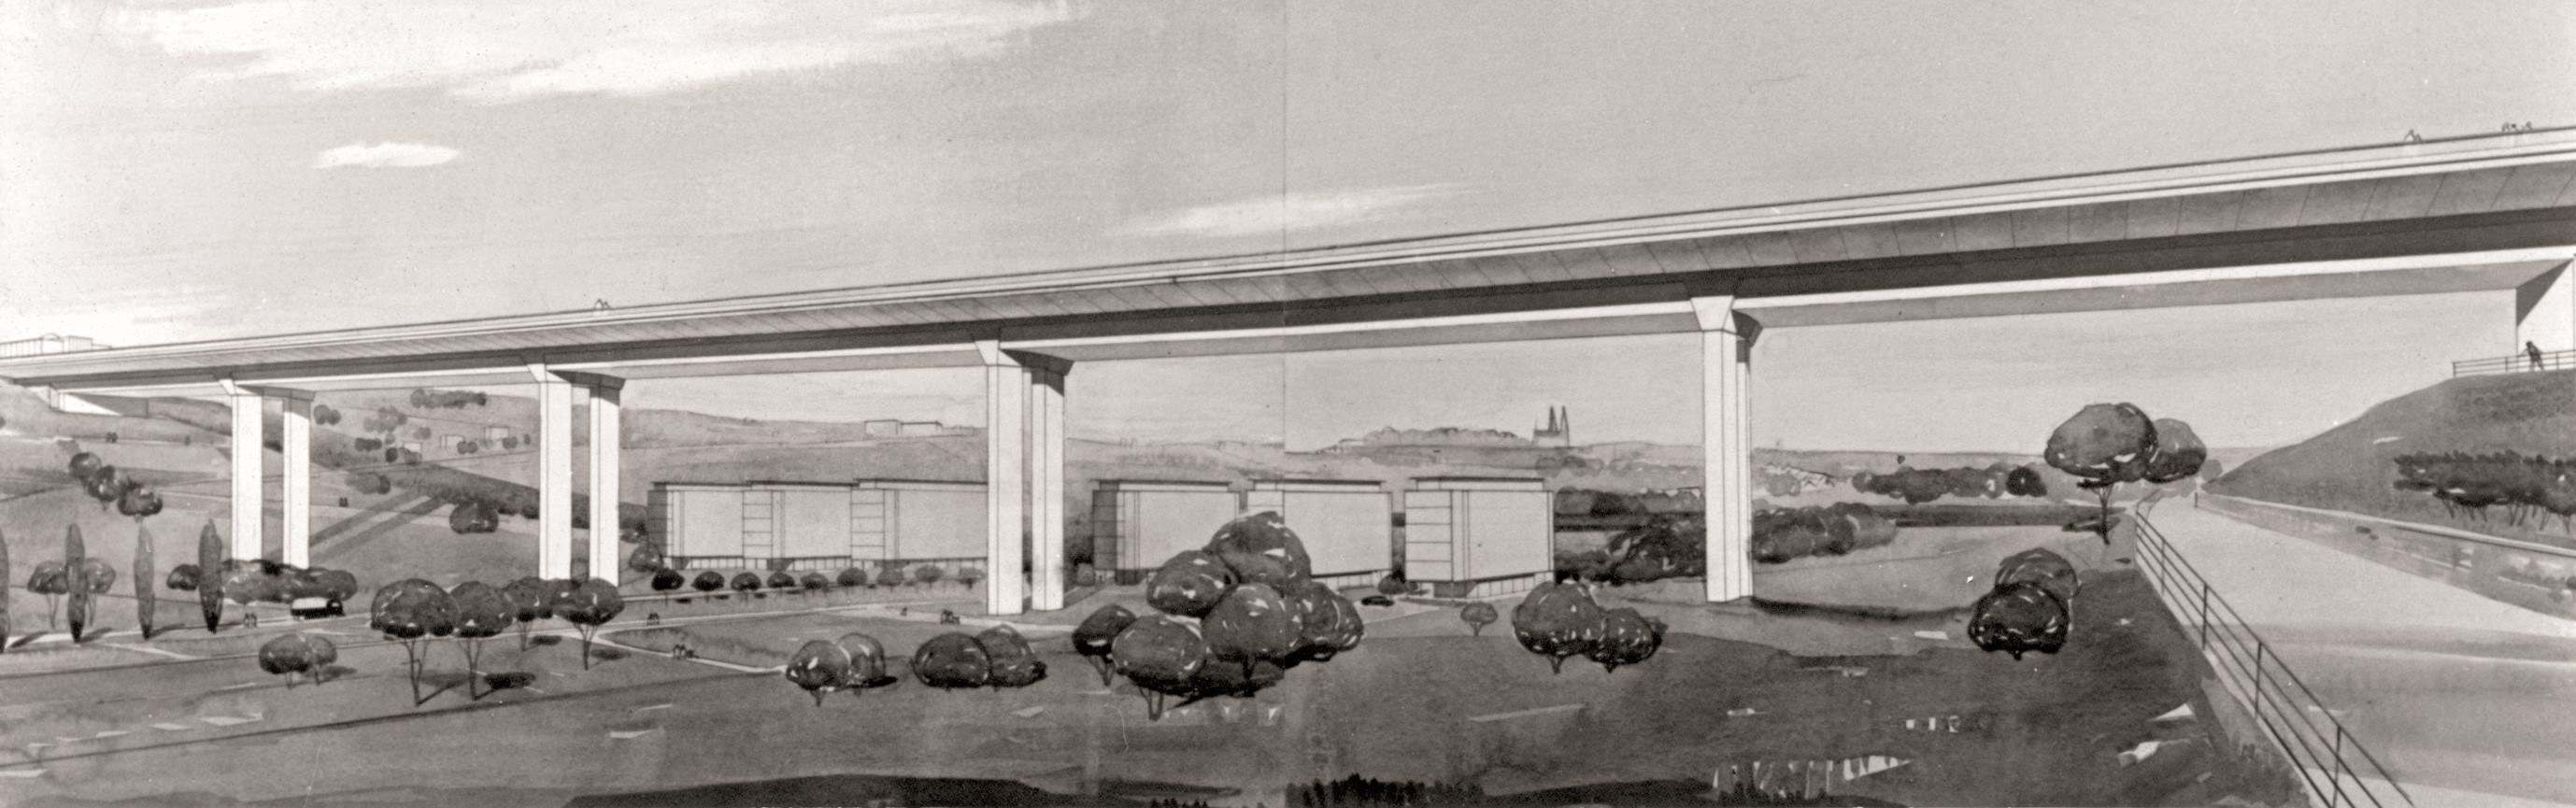 Nuselský most - návrh